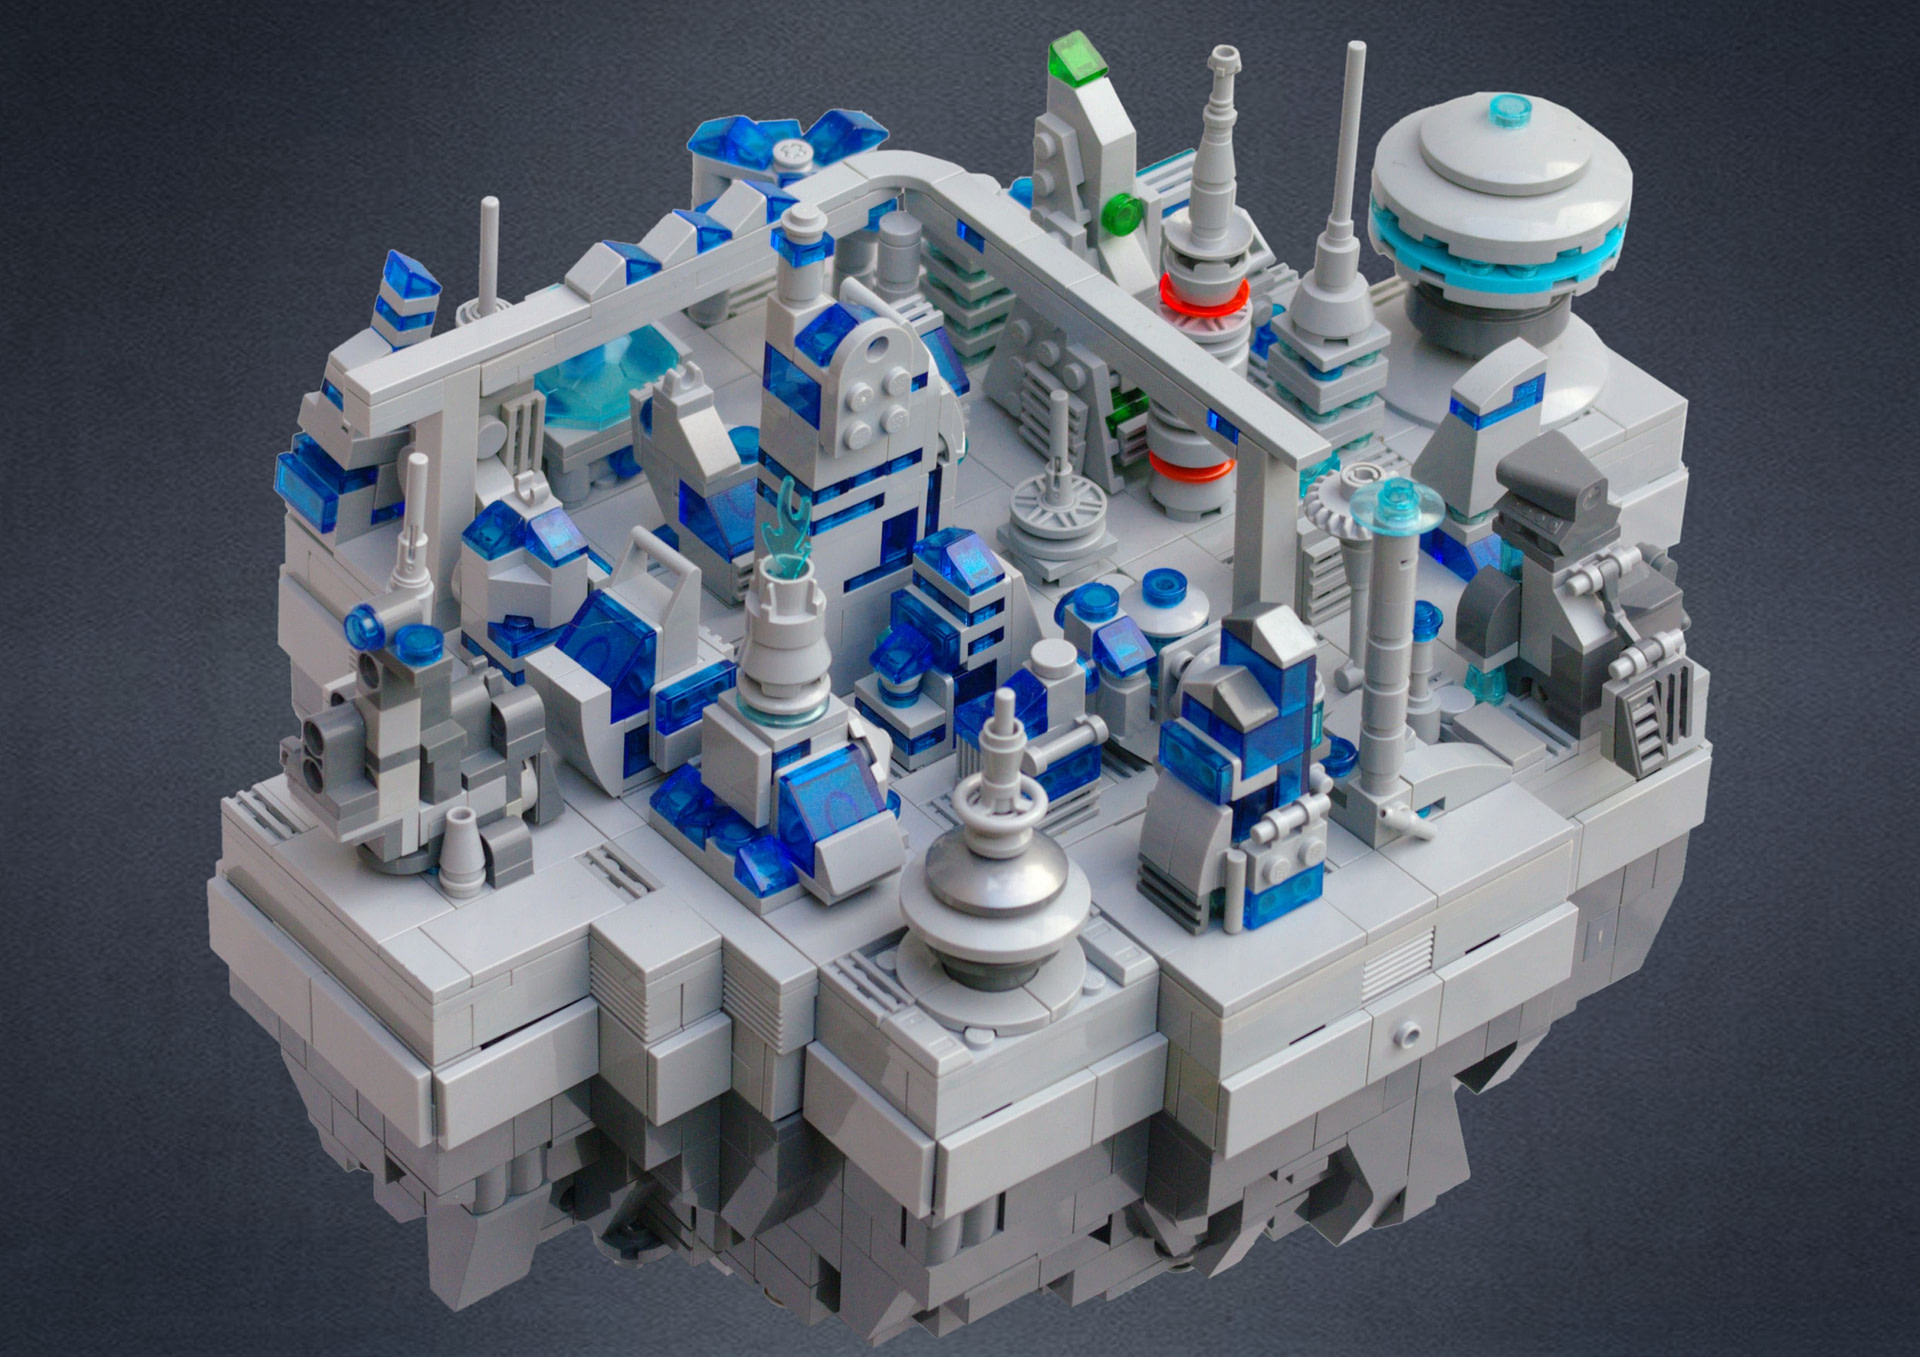 Concurs Microscale Future City – Creatia 13: Asteroid Base